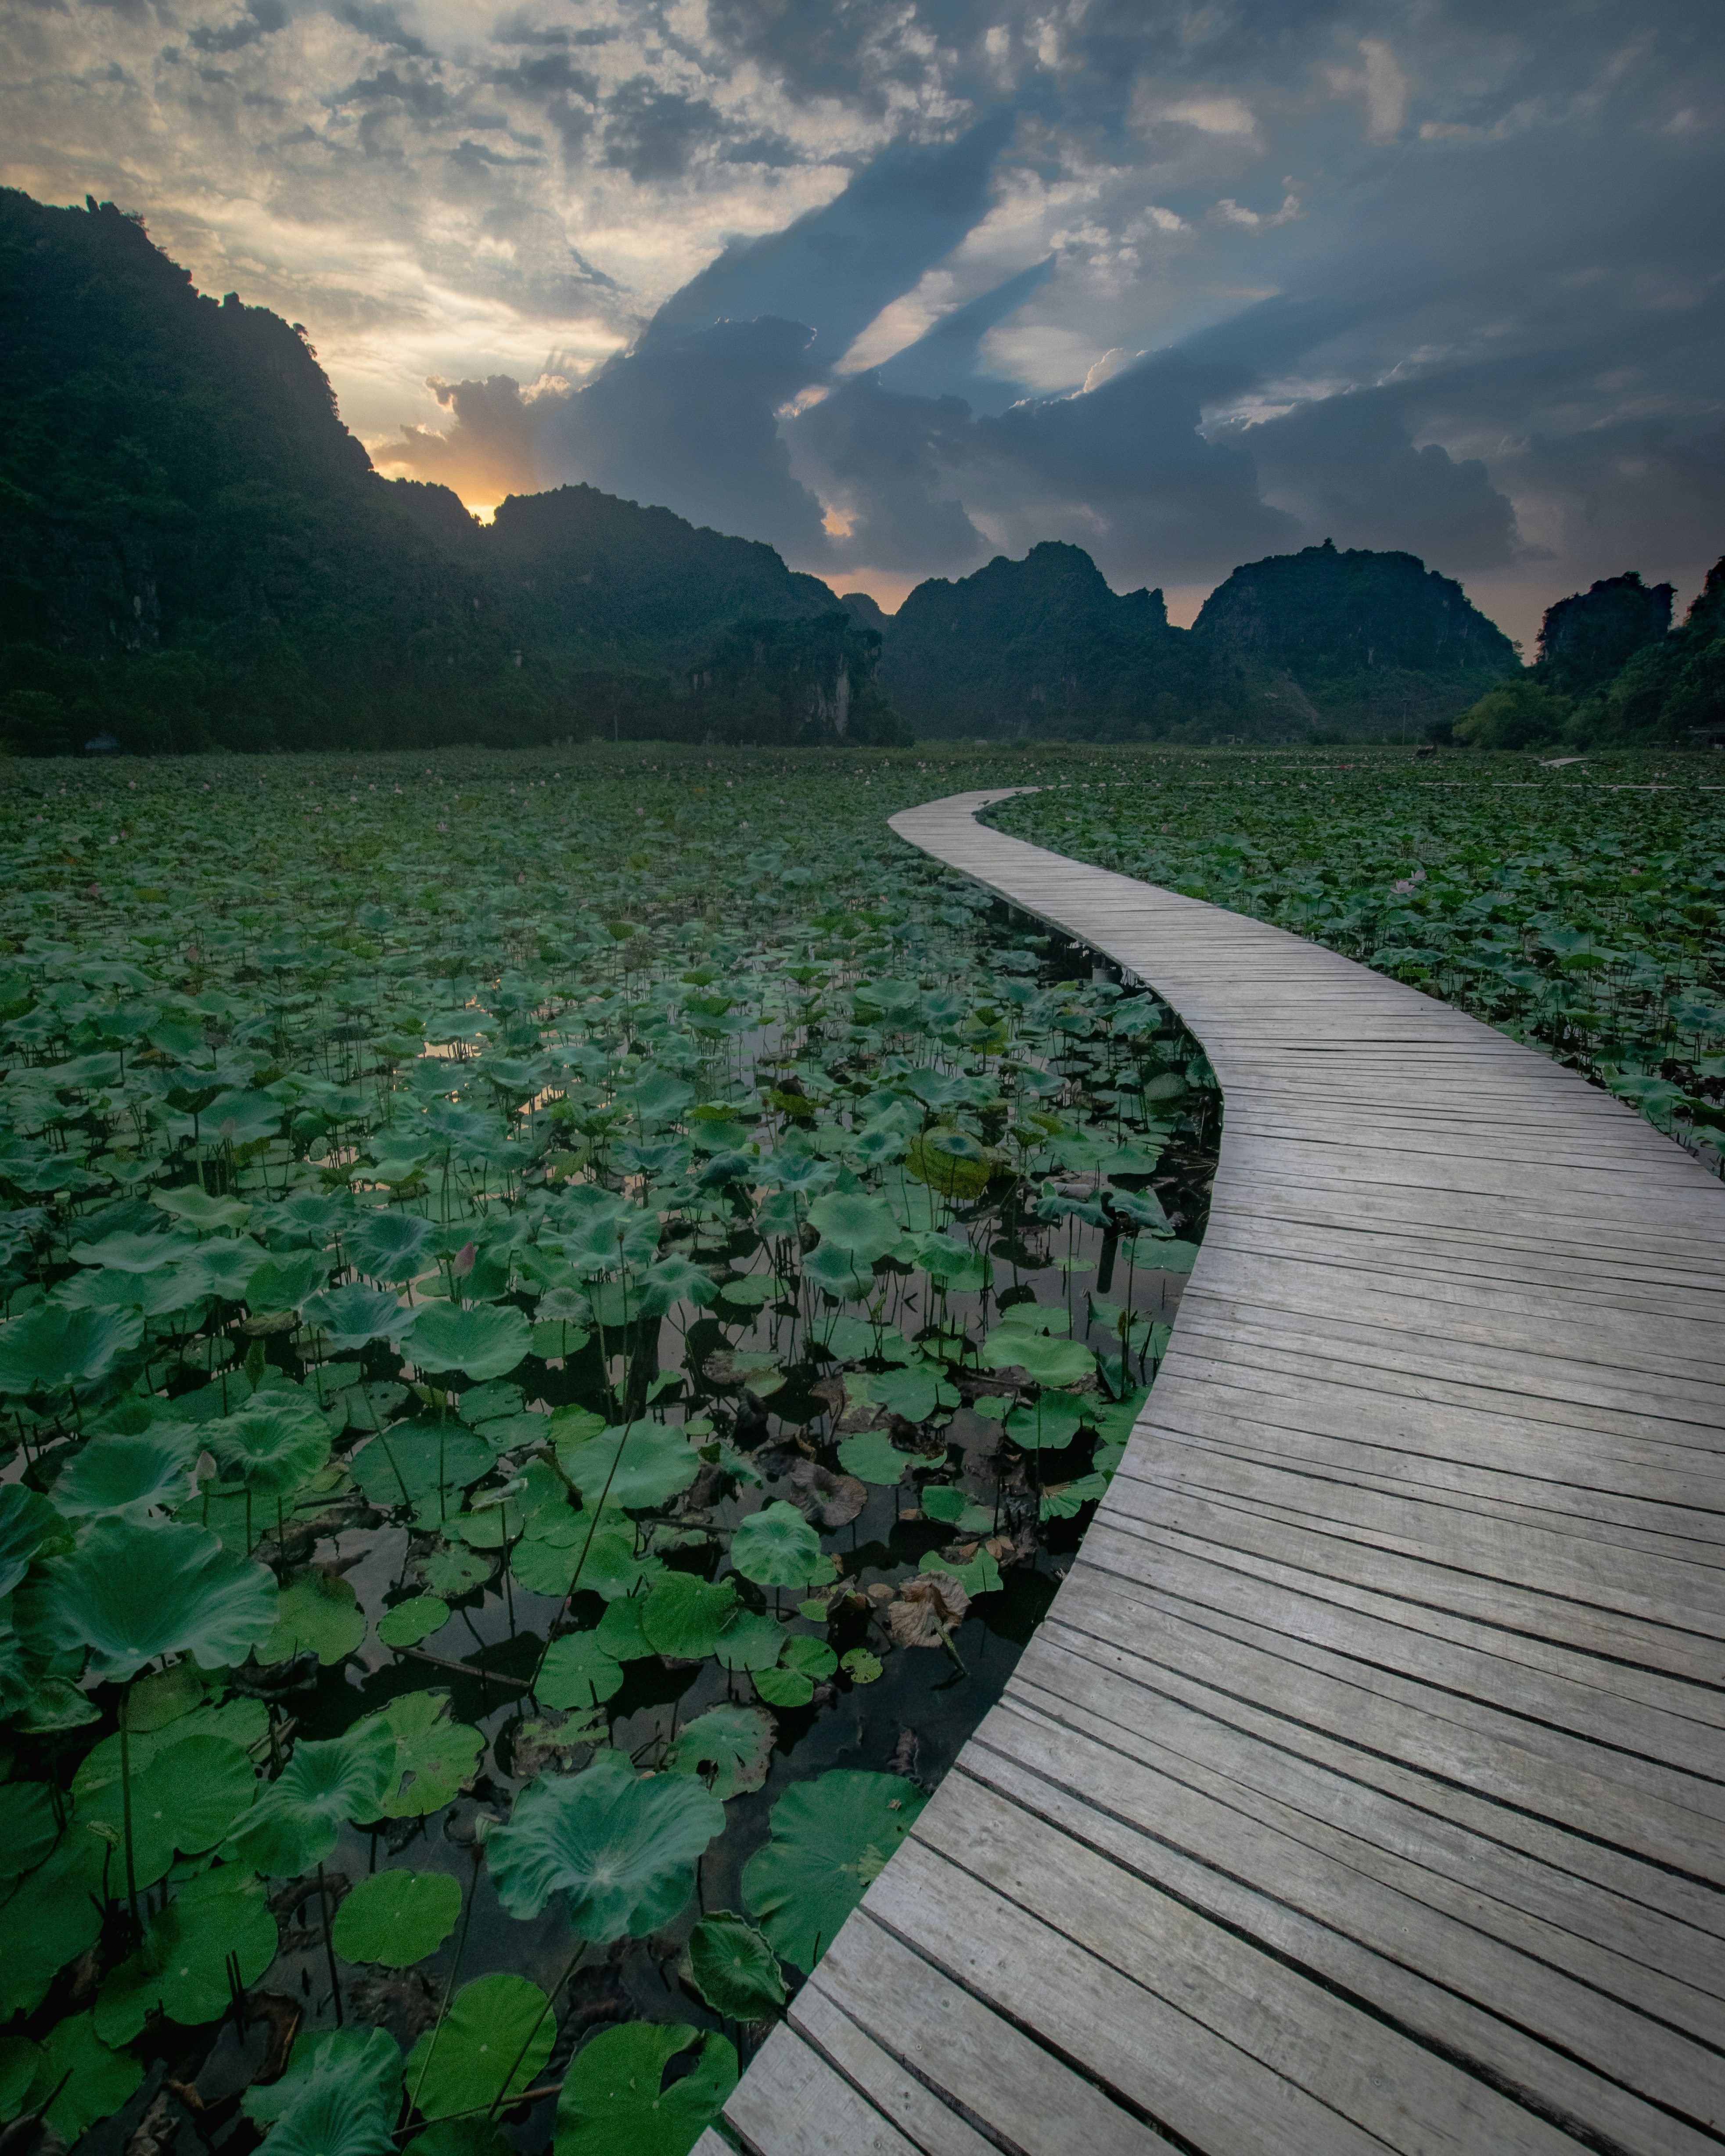 A wooden walkway through a marsh.